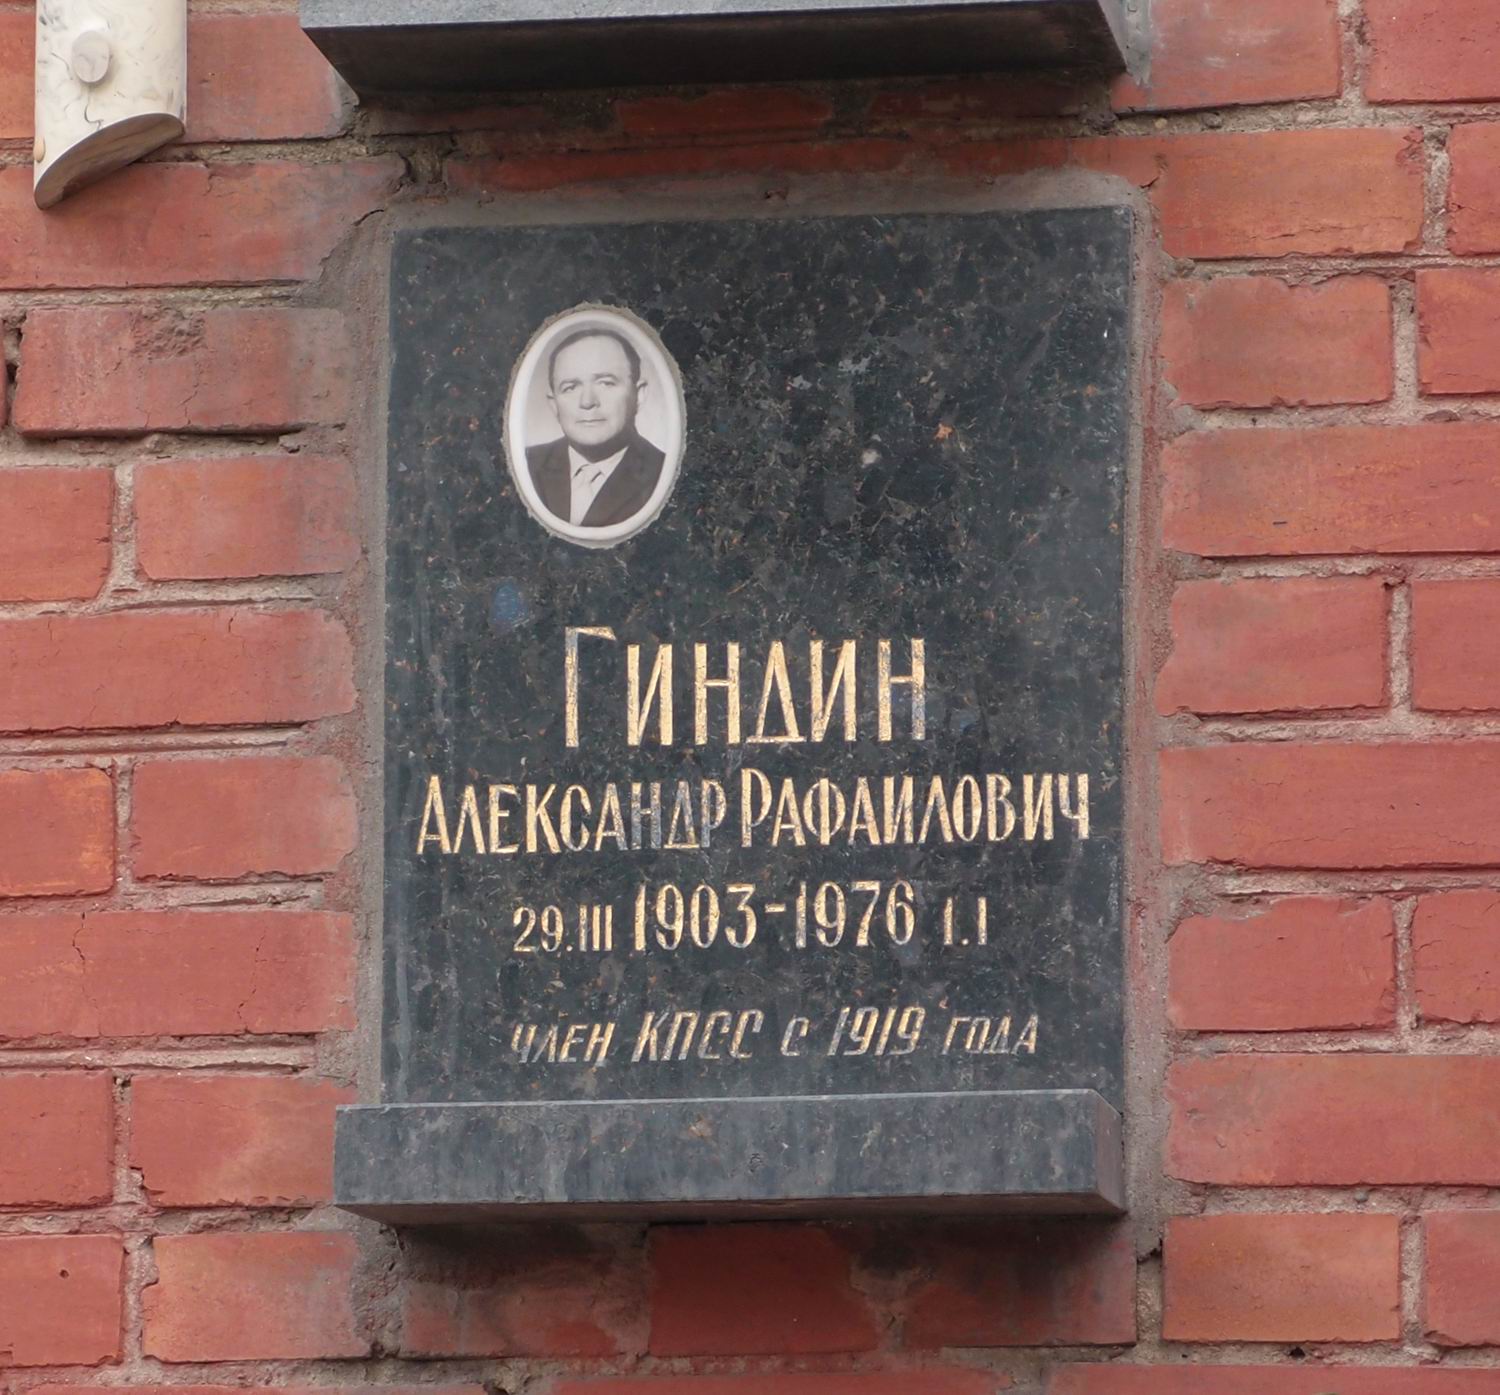 Плита на нише Гиндина А.Р. (1903-1976), на Новодевичьем кладбище (колумбарий [123]-1-2).